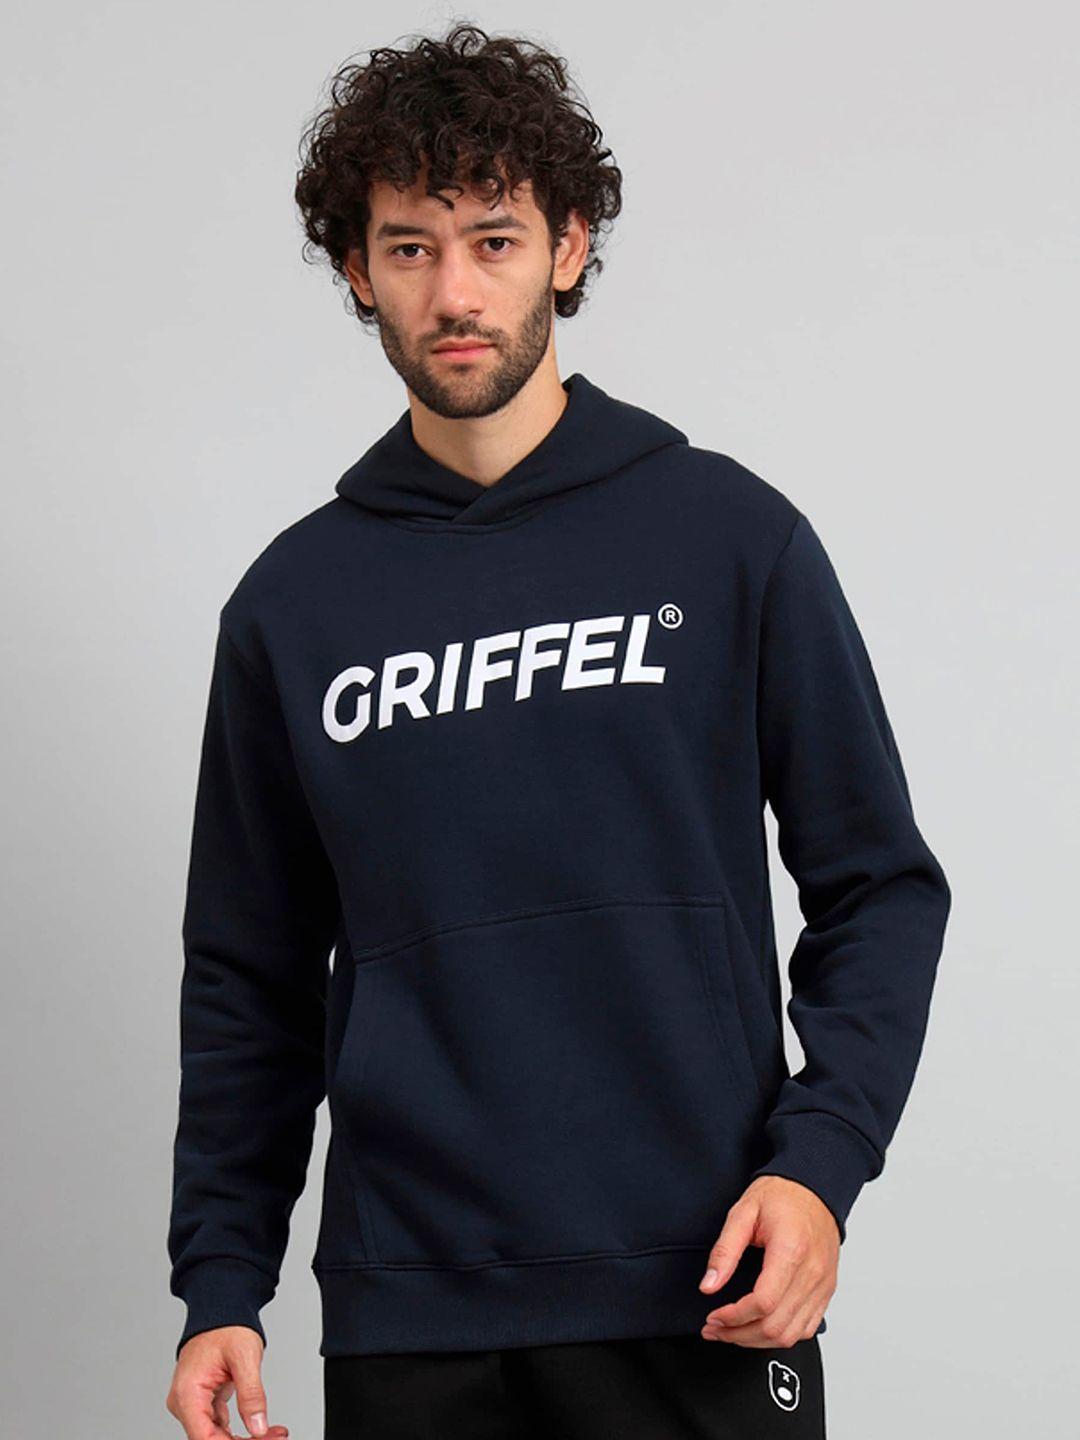 griffel brand logo printed hooded fleece sweatshirt